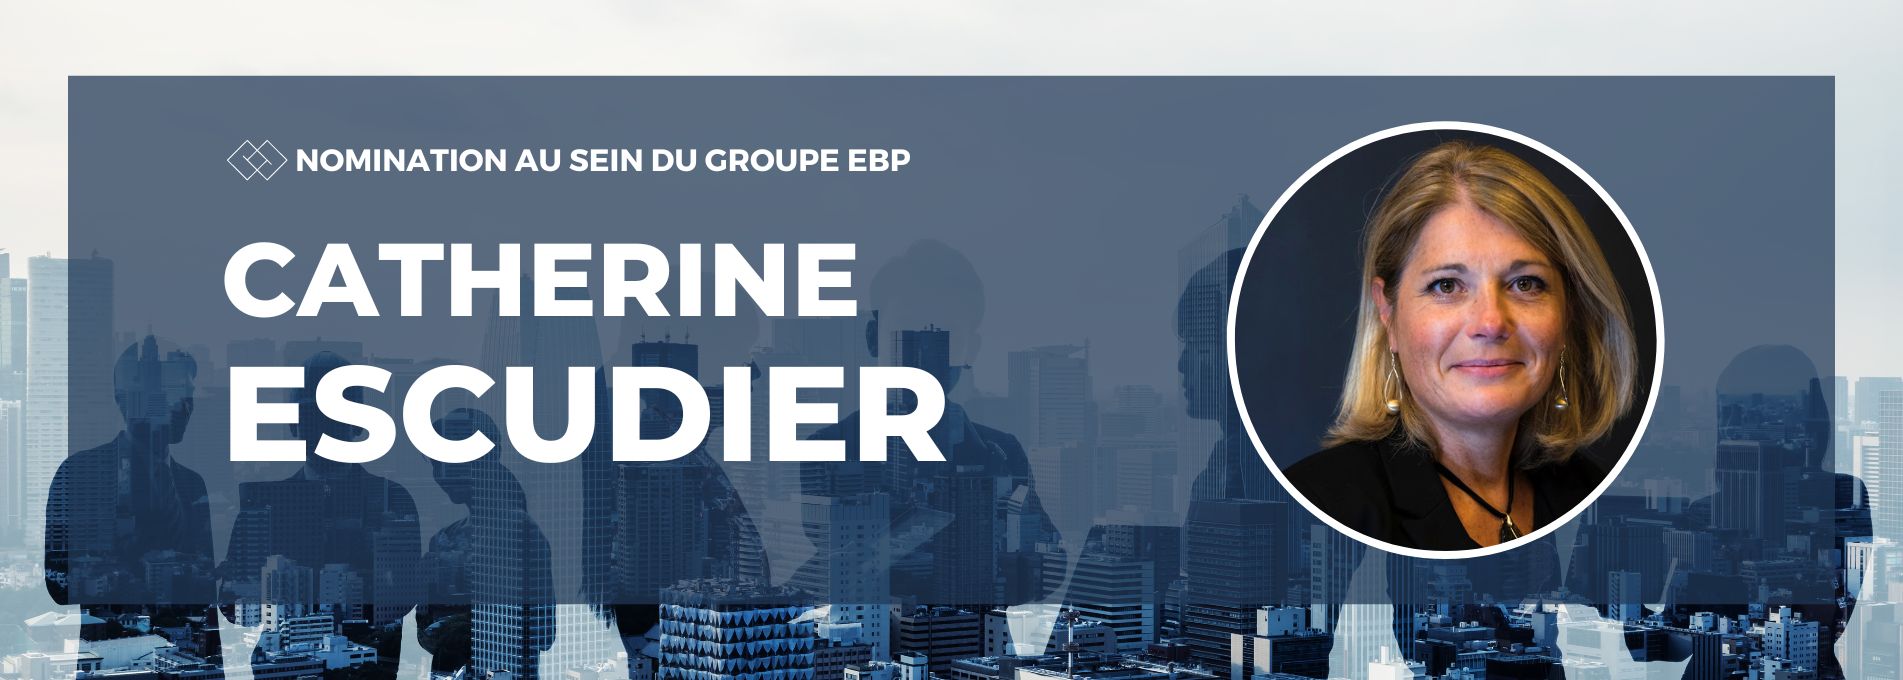 Catherine Escudier, nouvelle Directrice Commerciale du Groupe EBP